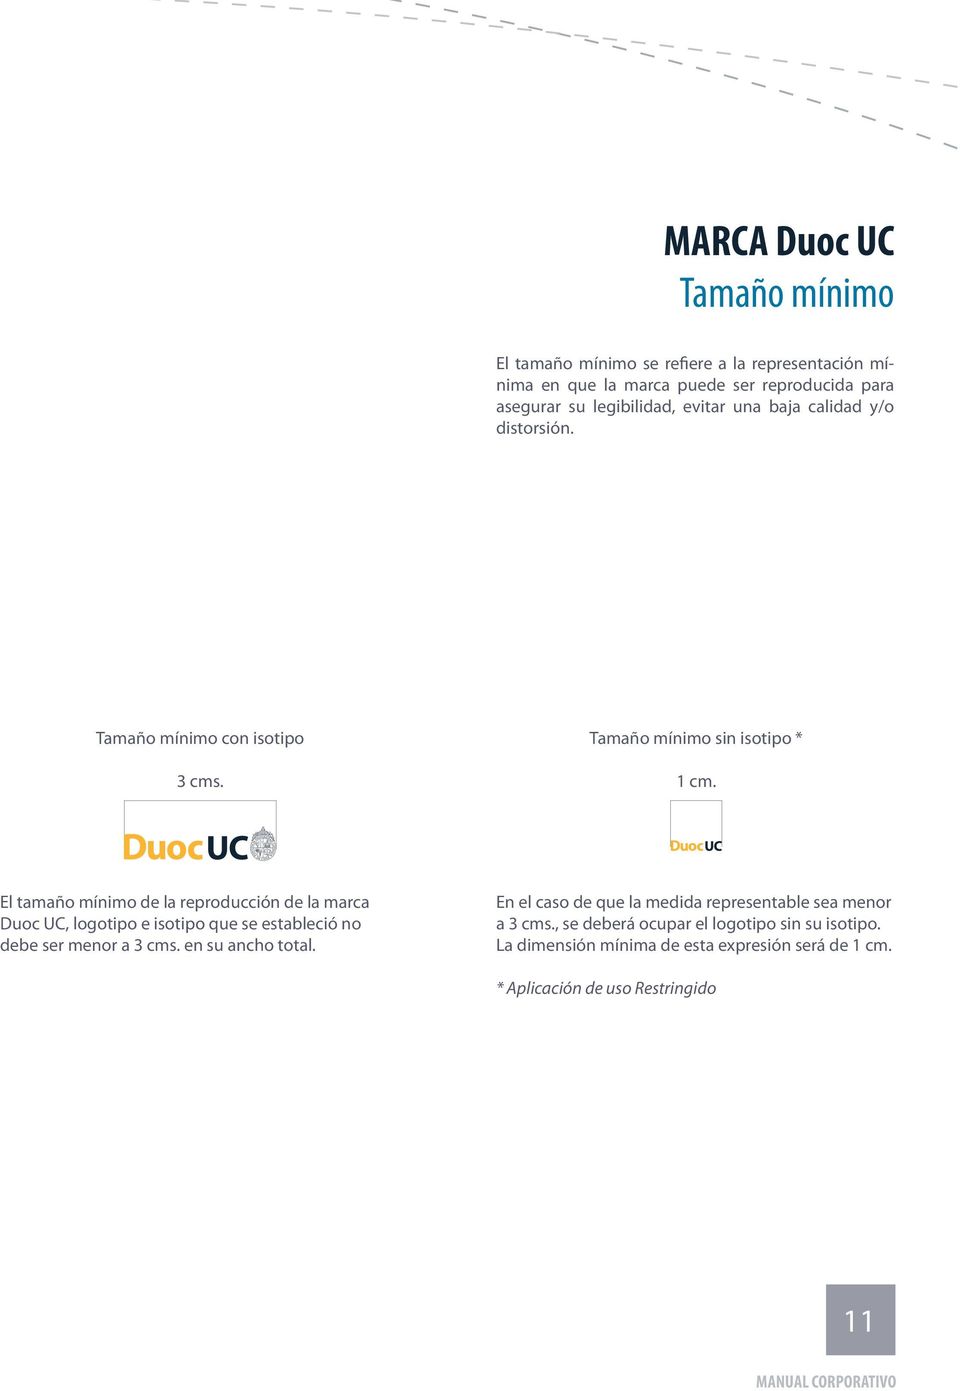 El tamaño mínimo de la reproducción de la marca Duoc UC, logotipo e isotipo que se estableció no debe ser menor a 3 cms. en su ancho total.